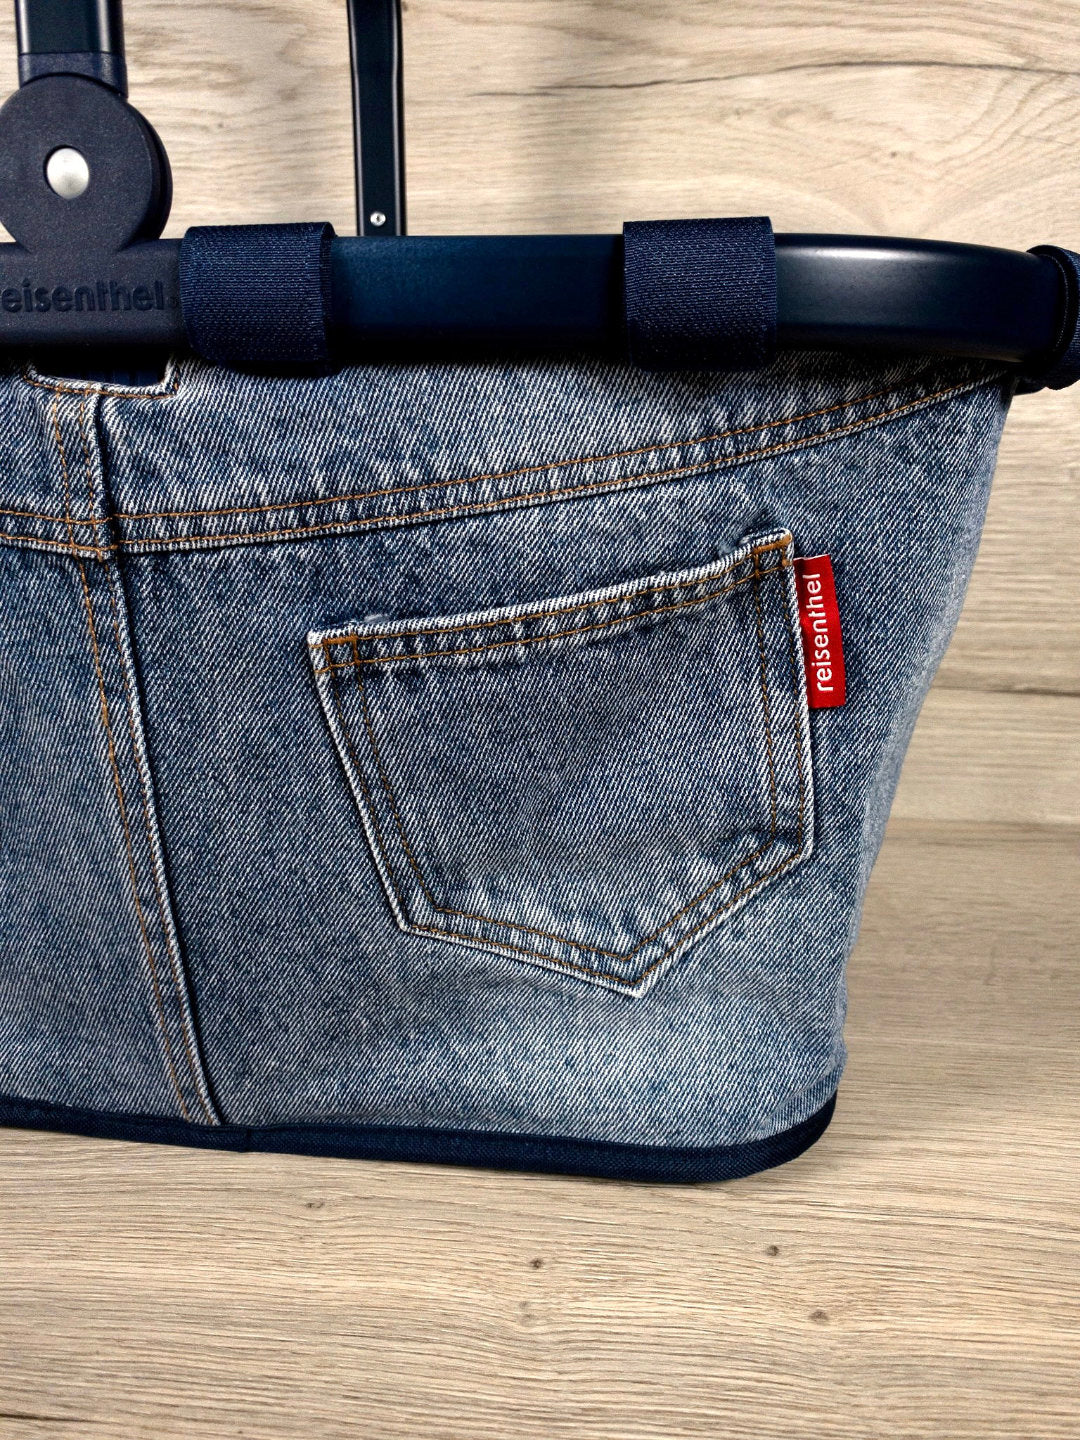 Carrybag Jeans - Einkaufskorb - Reisenthel